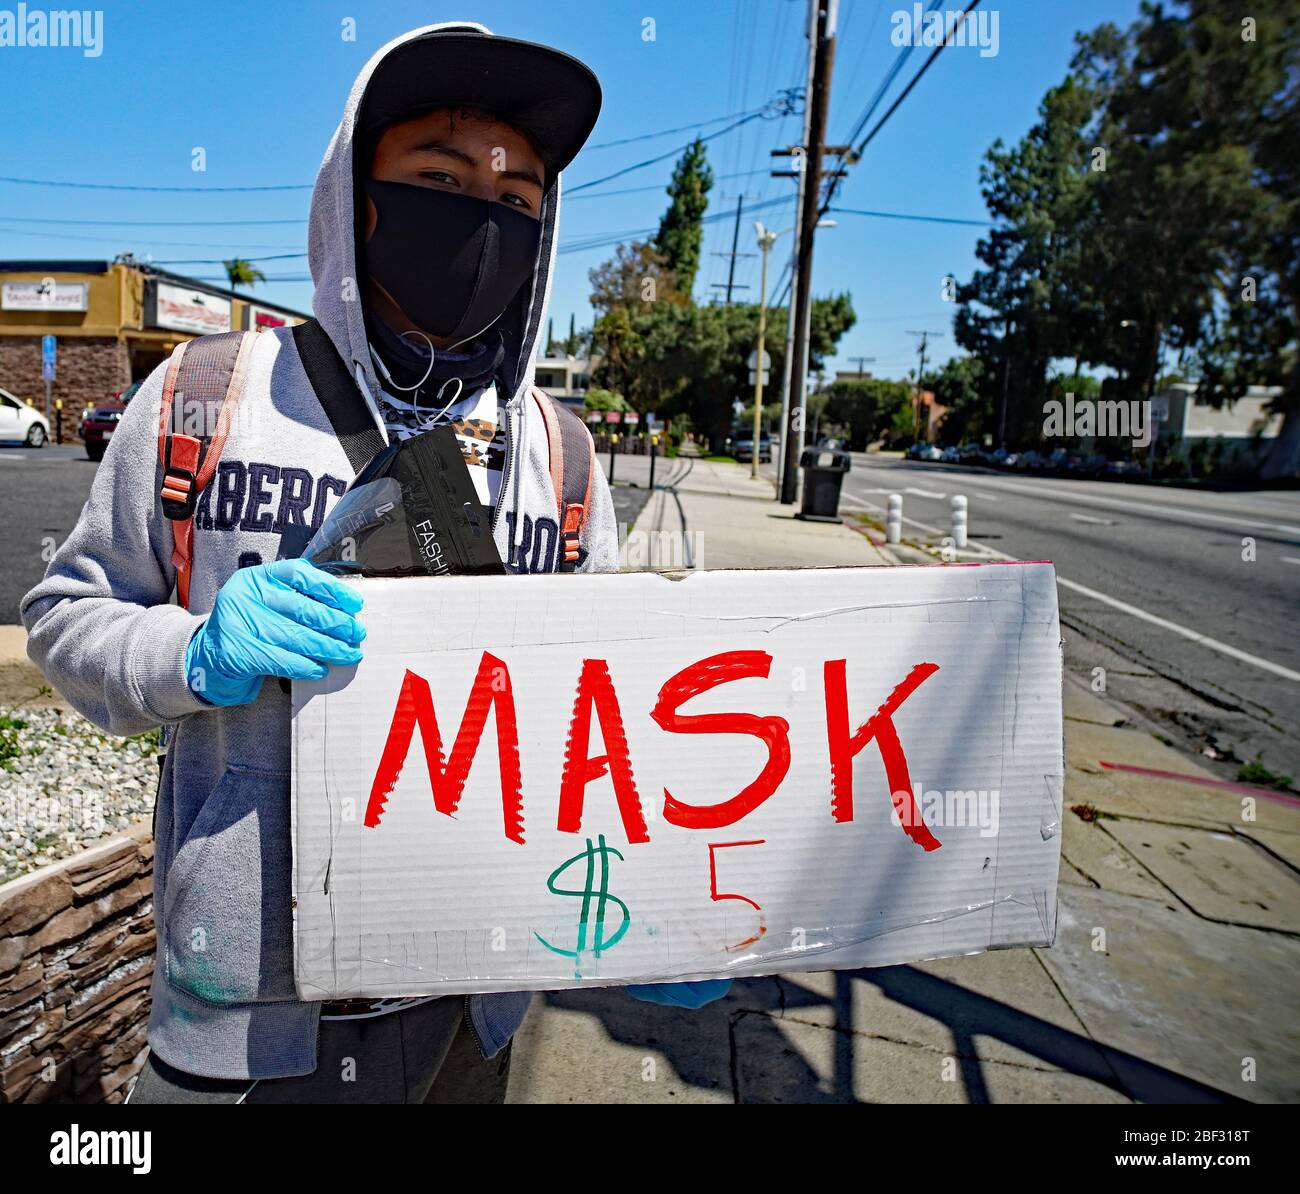 16th aprile 2020, Los Angeles California, individuale che vende maschere di sicurezza a San Fernando Valley a causa del covid-19 Pandemic. Foto Stock